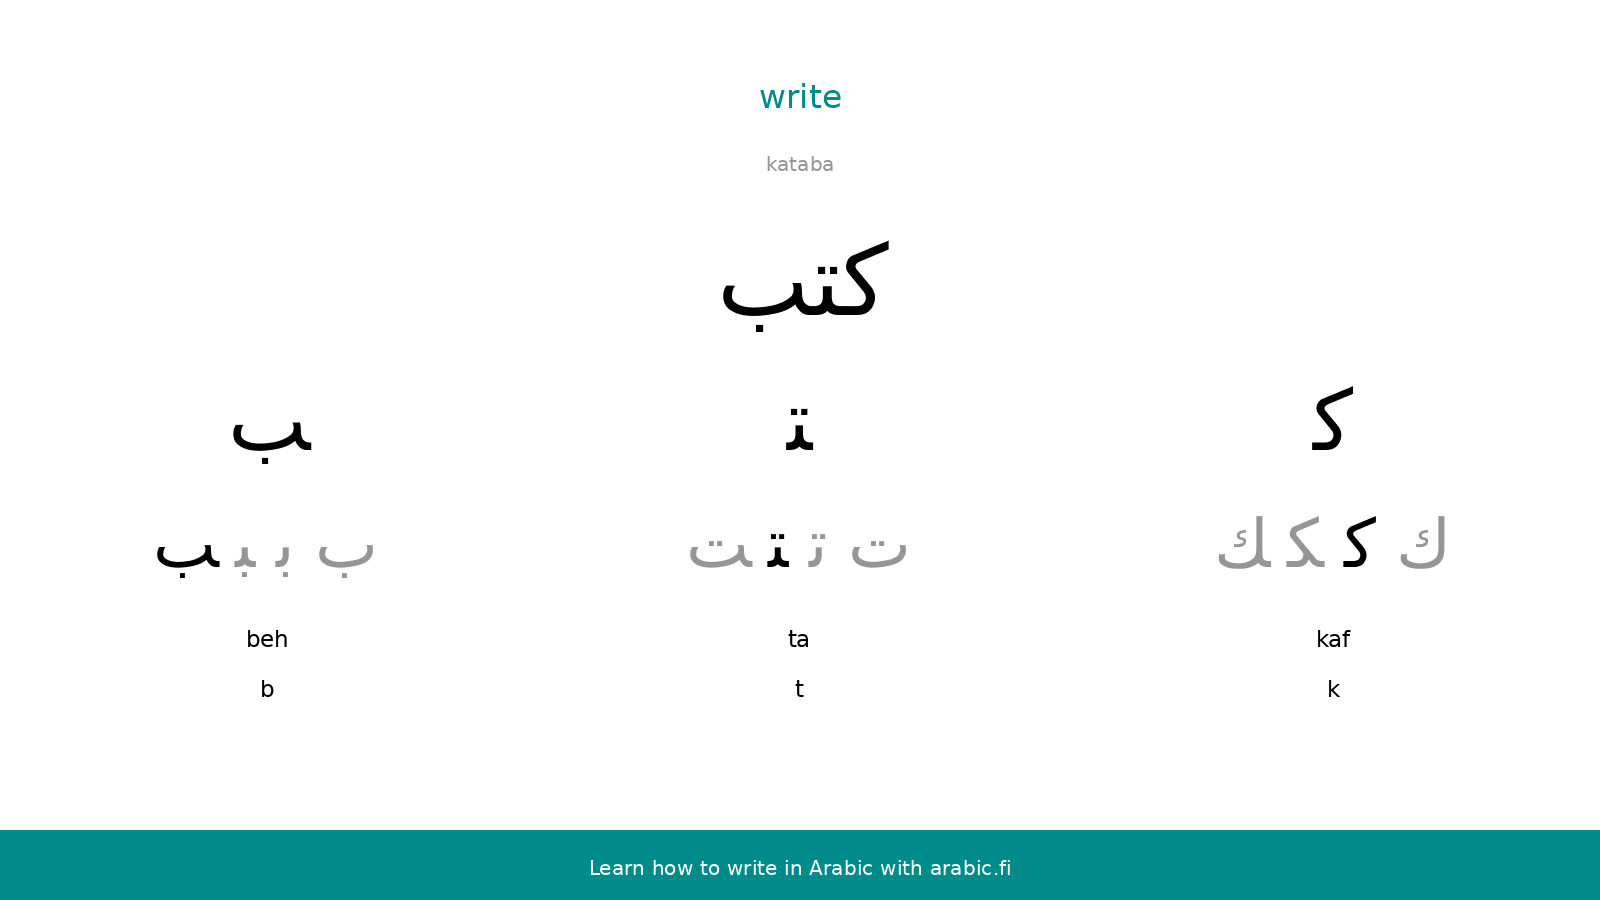 Write – an Arabic word